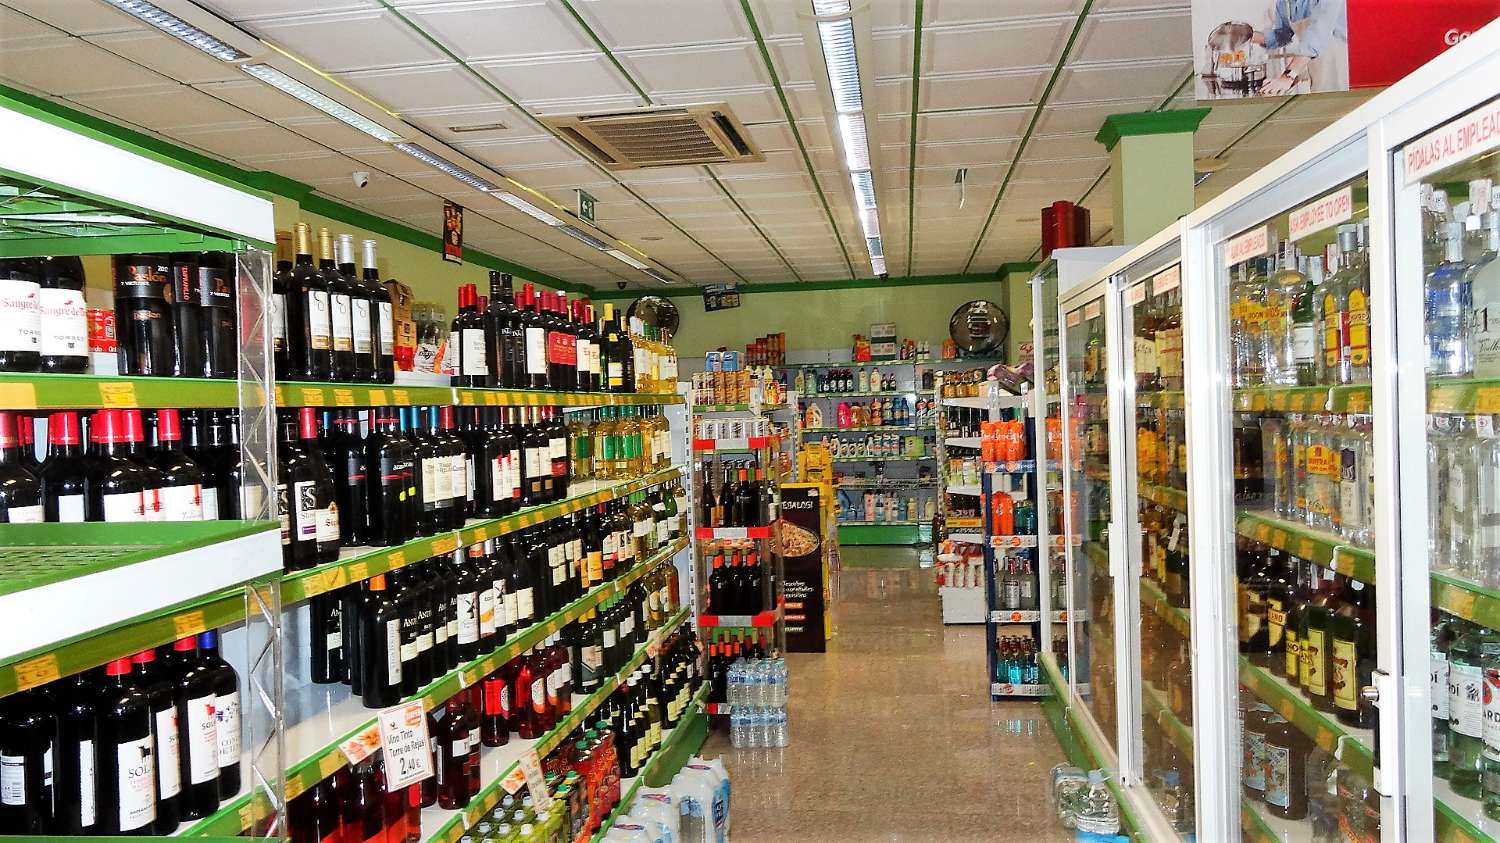 Bedrijfsvastgoed te koop :Supermarket & Grill chickens - Afhaalmaaltijden - Benalmadena Costa del Sol - Spanje